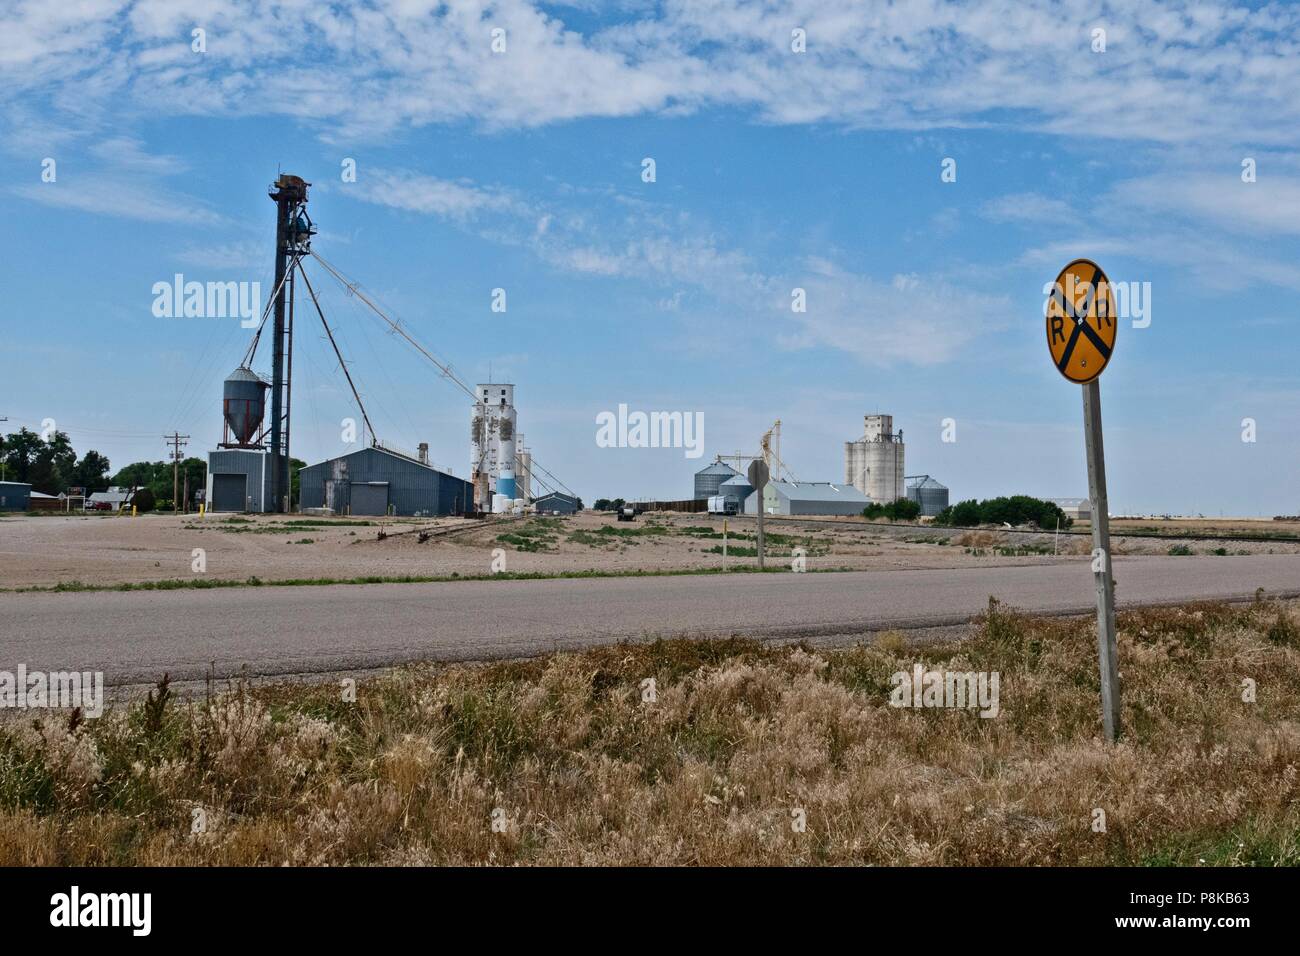 Moskau, Kansas am Straßenrand, Getreidesilos und Getreidelager Einrichtungen Stockfoto